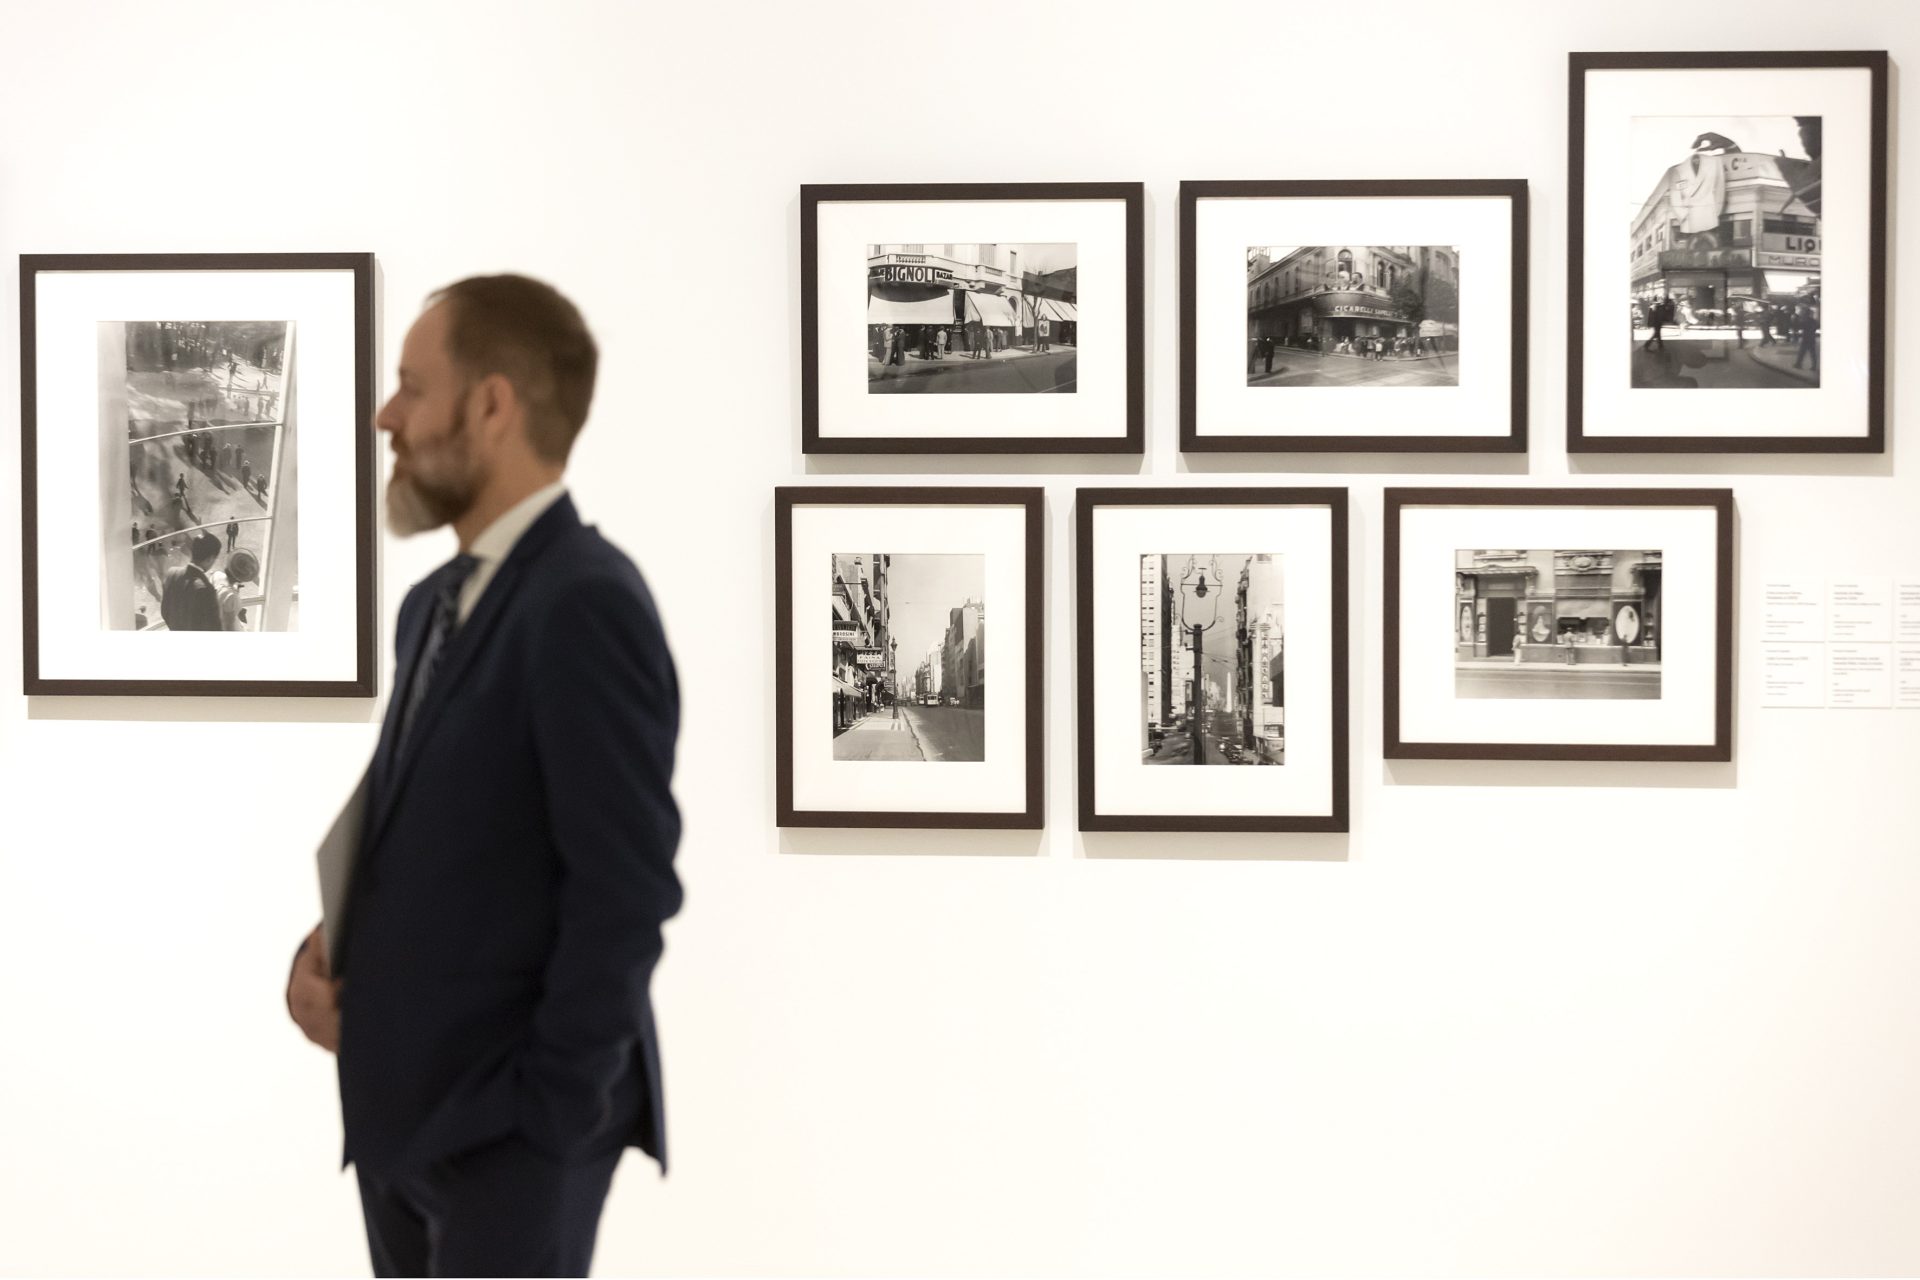 Algunas de las fotografías que conforman la exposición 'Fervor de Buenos Aires' de los fotógrafos Horacio Coppola y Grete Stern, que se presenta hoy en el Museo Carmen Thyssen Málaga. EFE/Daniel Pérez